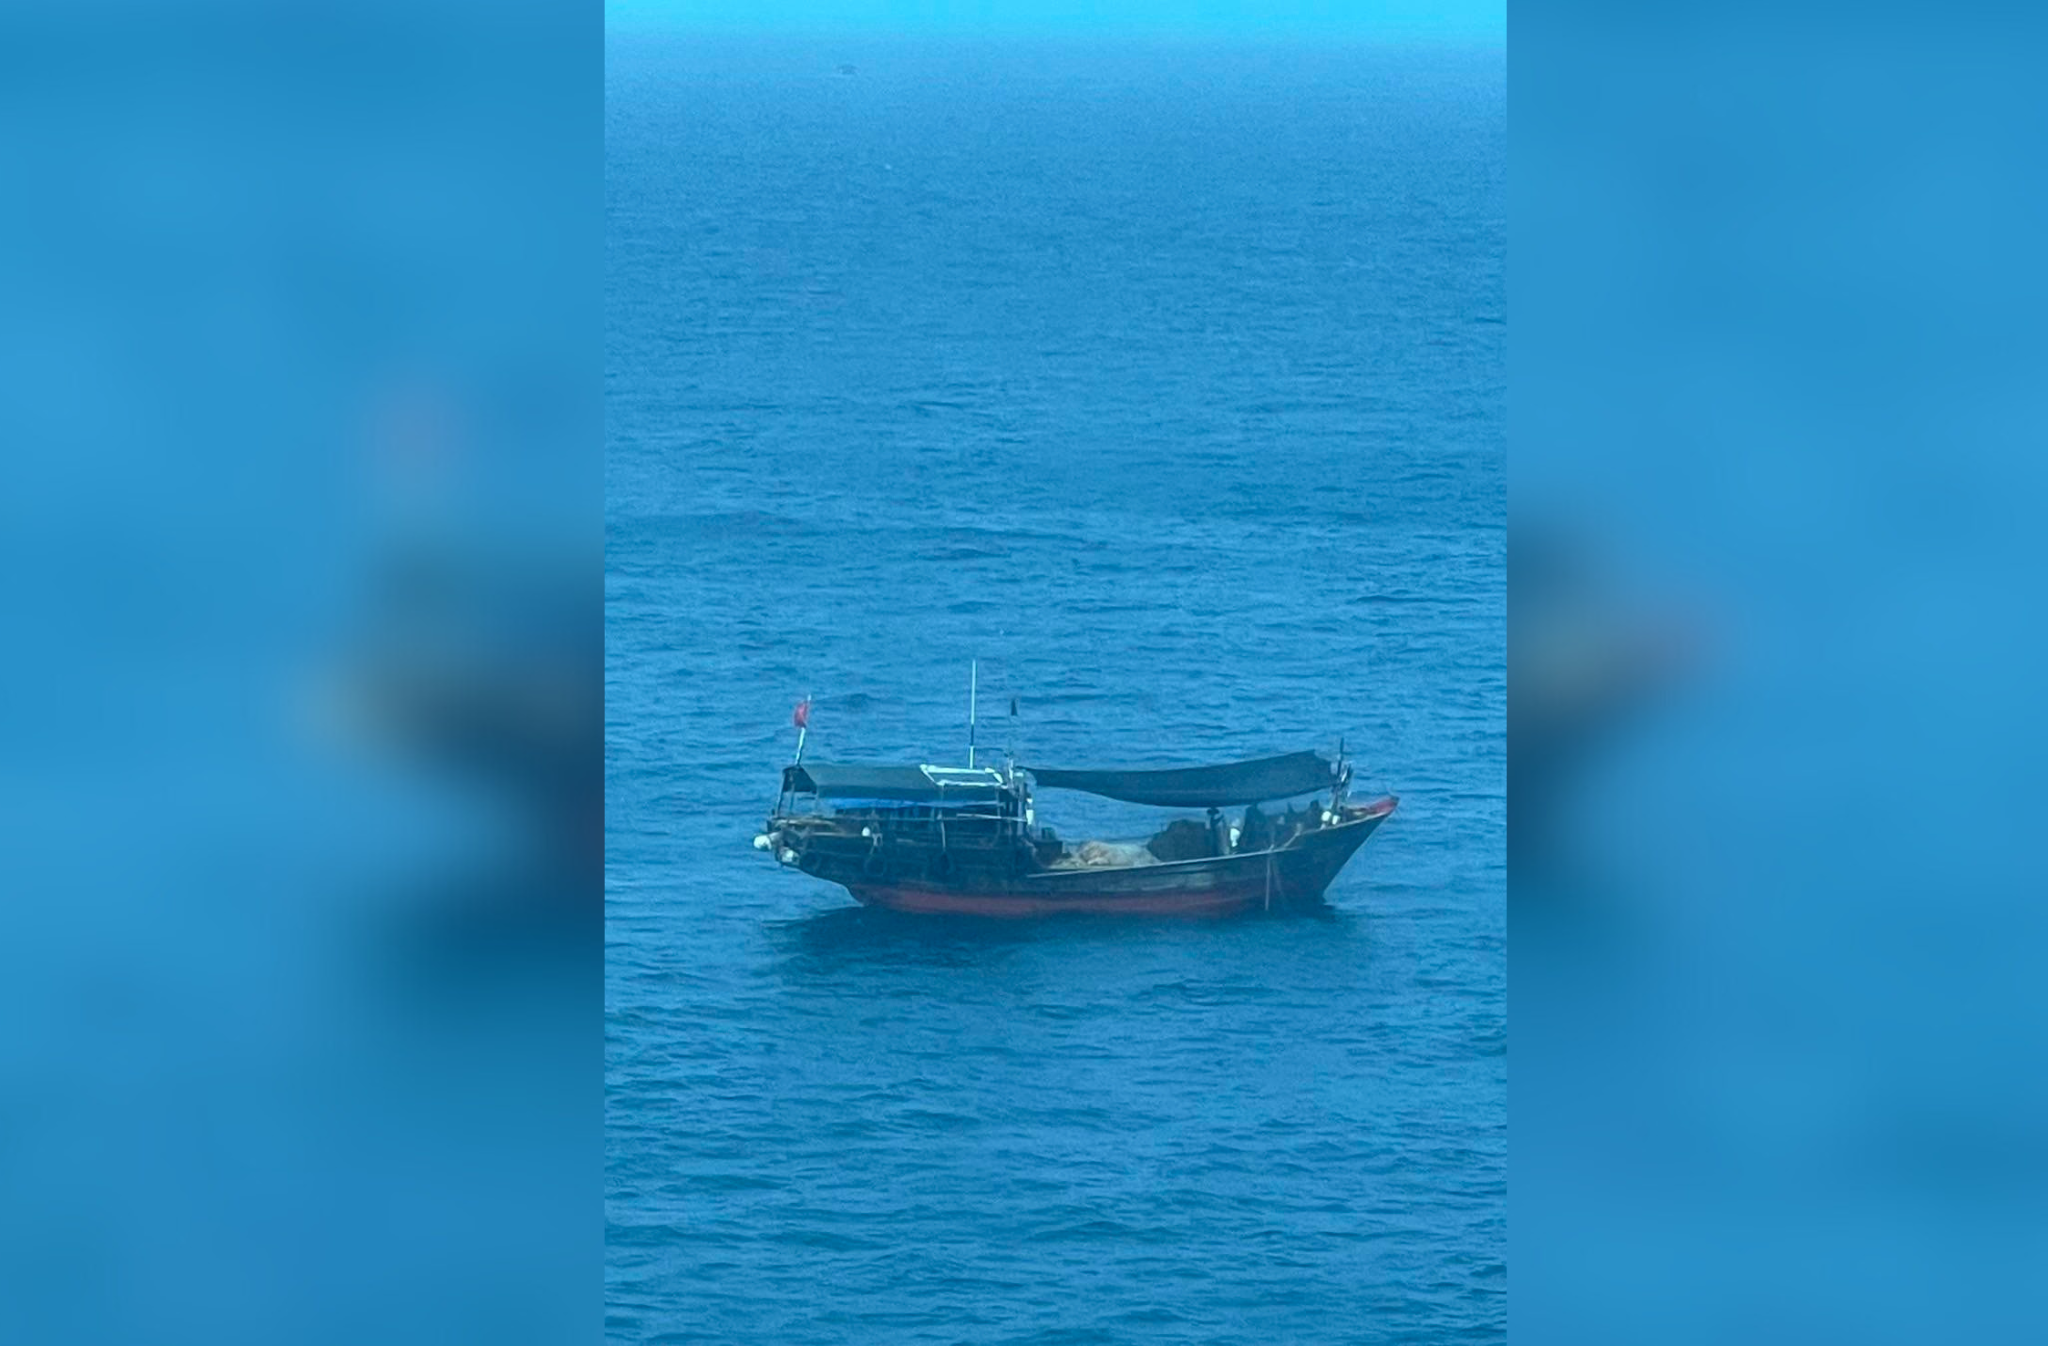 從香港到越南郵輪也常能看到大陸漁船在南海區域捕漁。圖/郵輪遊客提供